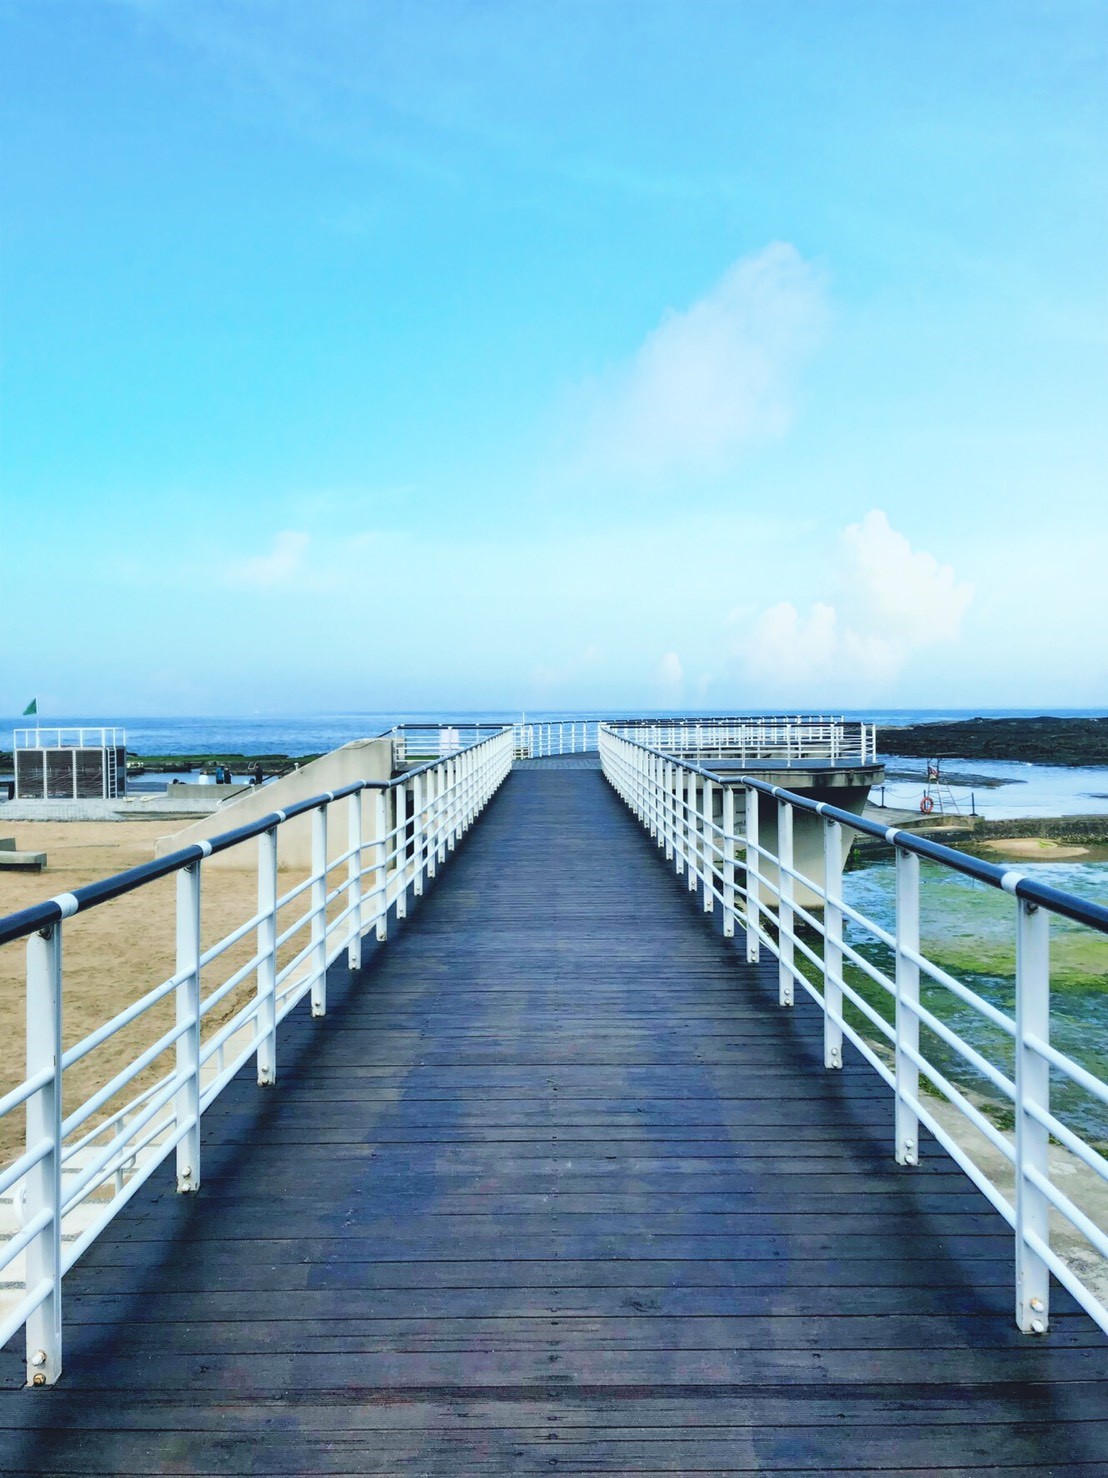 和平島公園天使向海步道，延伸向海的步道可一覽無邊際大海。 /和平島公園提供